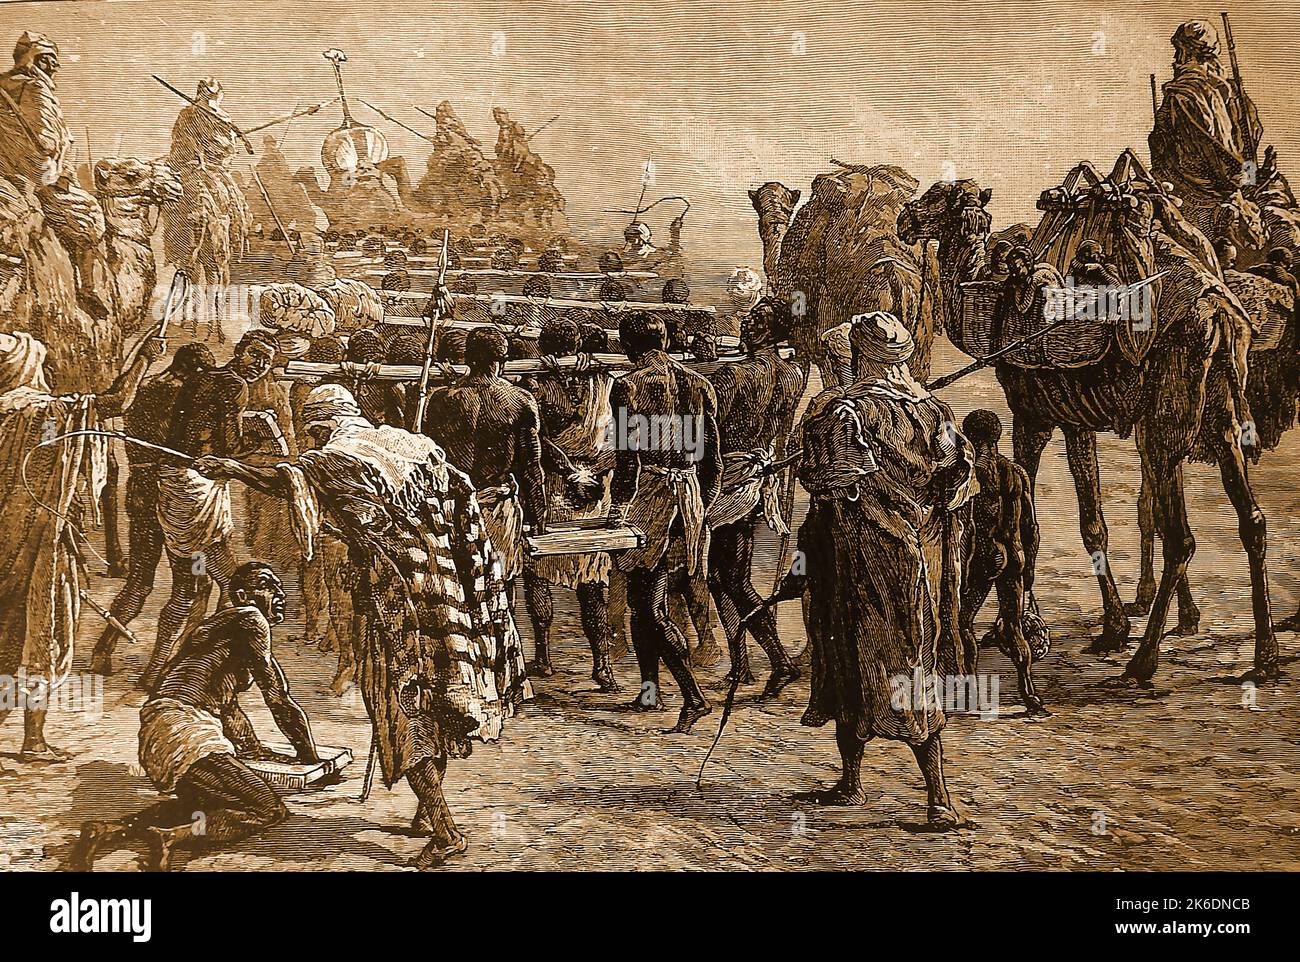 Una ilustración de 1890 de una banda africana de comerciantes de esclavos en movimiento con esclavos capturados Foto de stock